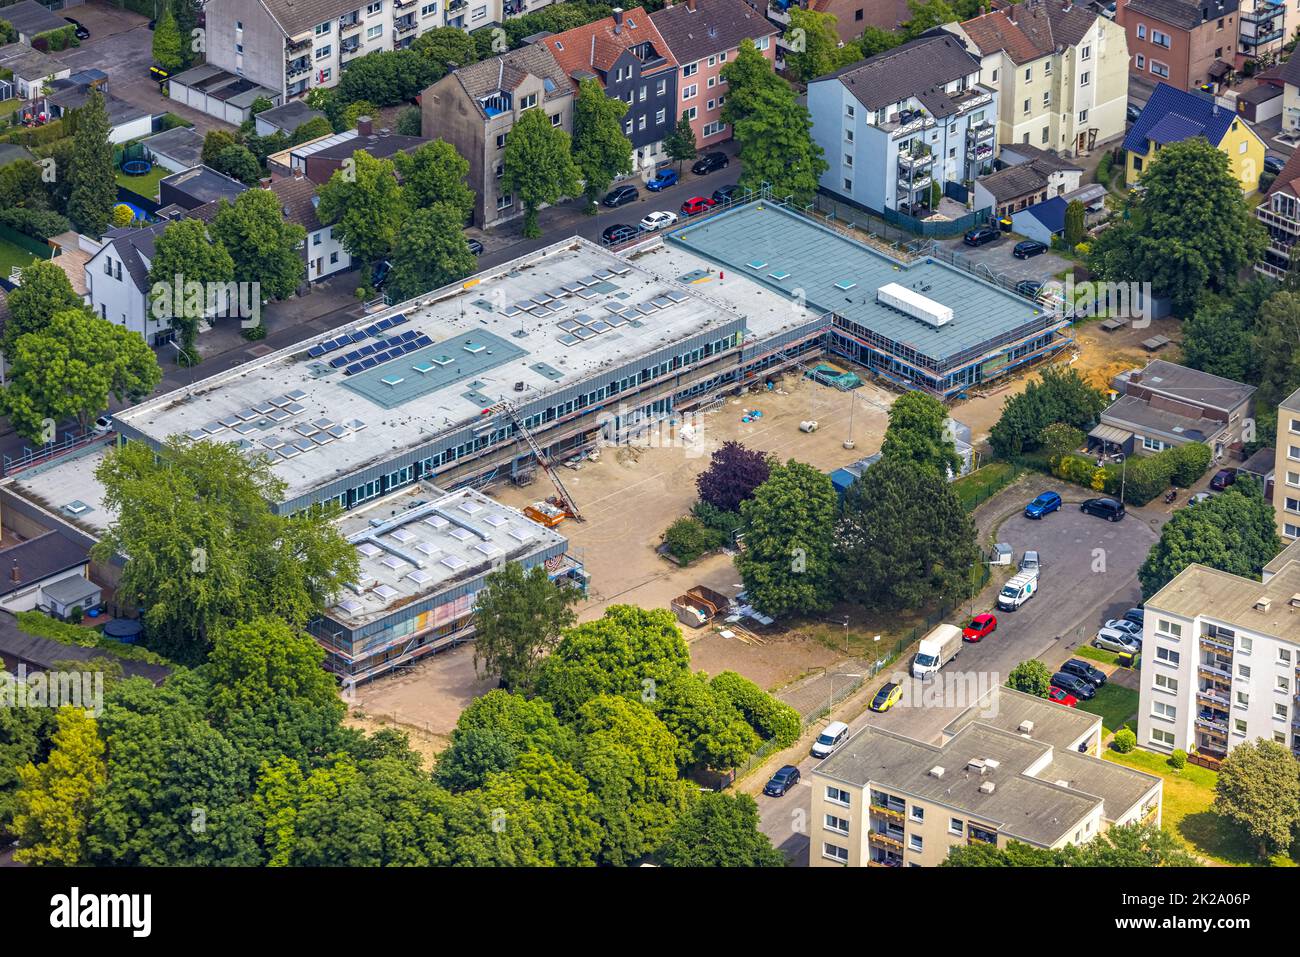 Luftbild, Baustelle und Sanierung der Claudiusschule, Wanne, Herne, Ruhrgebiet, Nordrhein-Westfalen, Deutschland Stock Photo